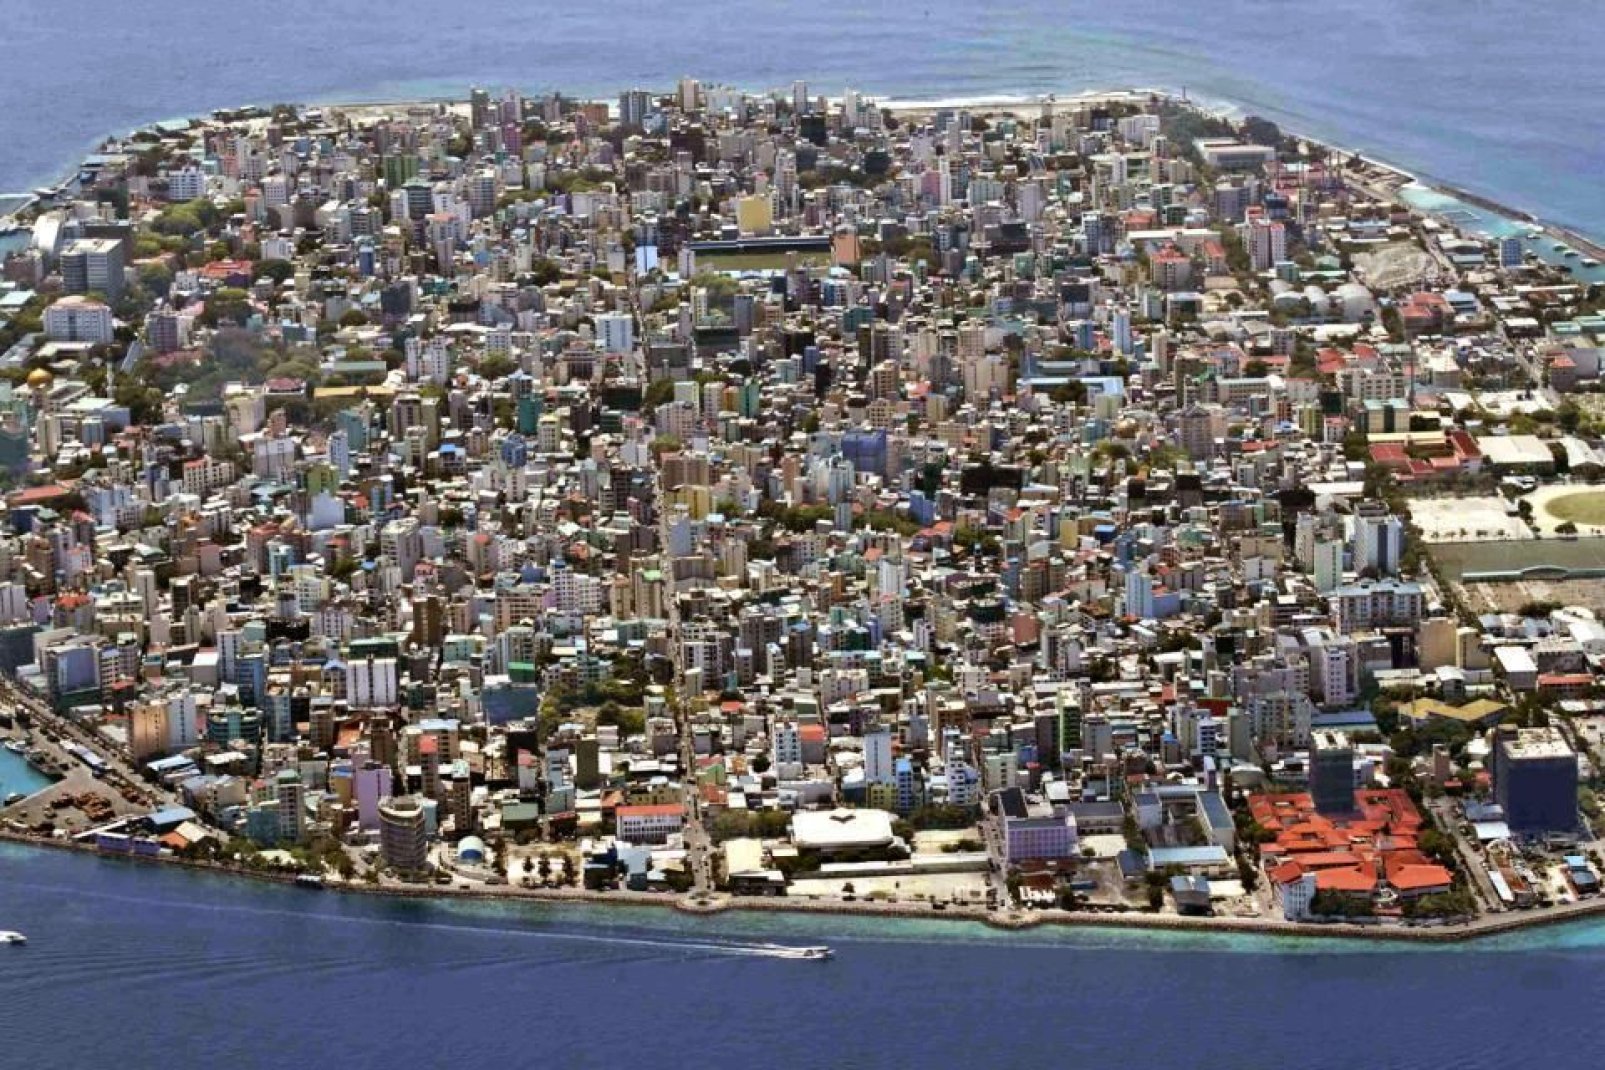 Malé cuenta con unos 100.000 habitantes que viven principalmente de la pesca y del turismo.